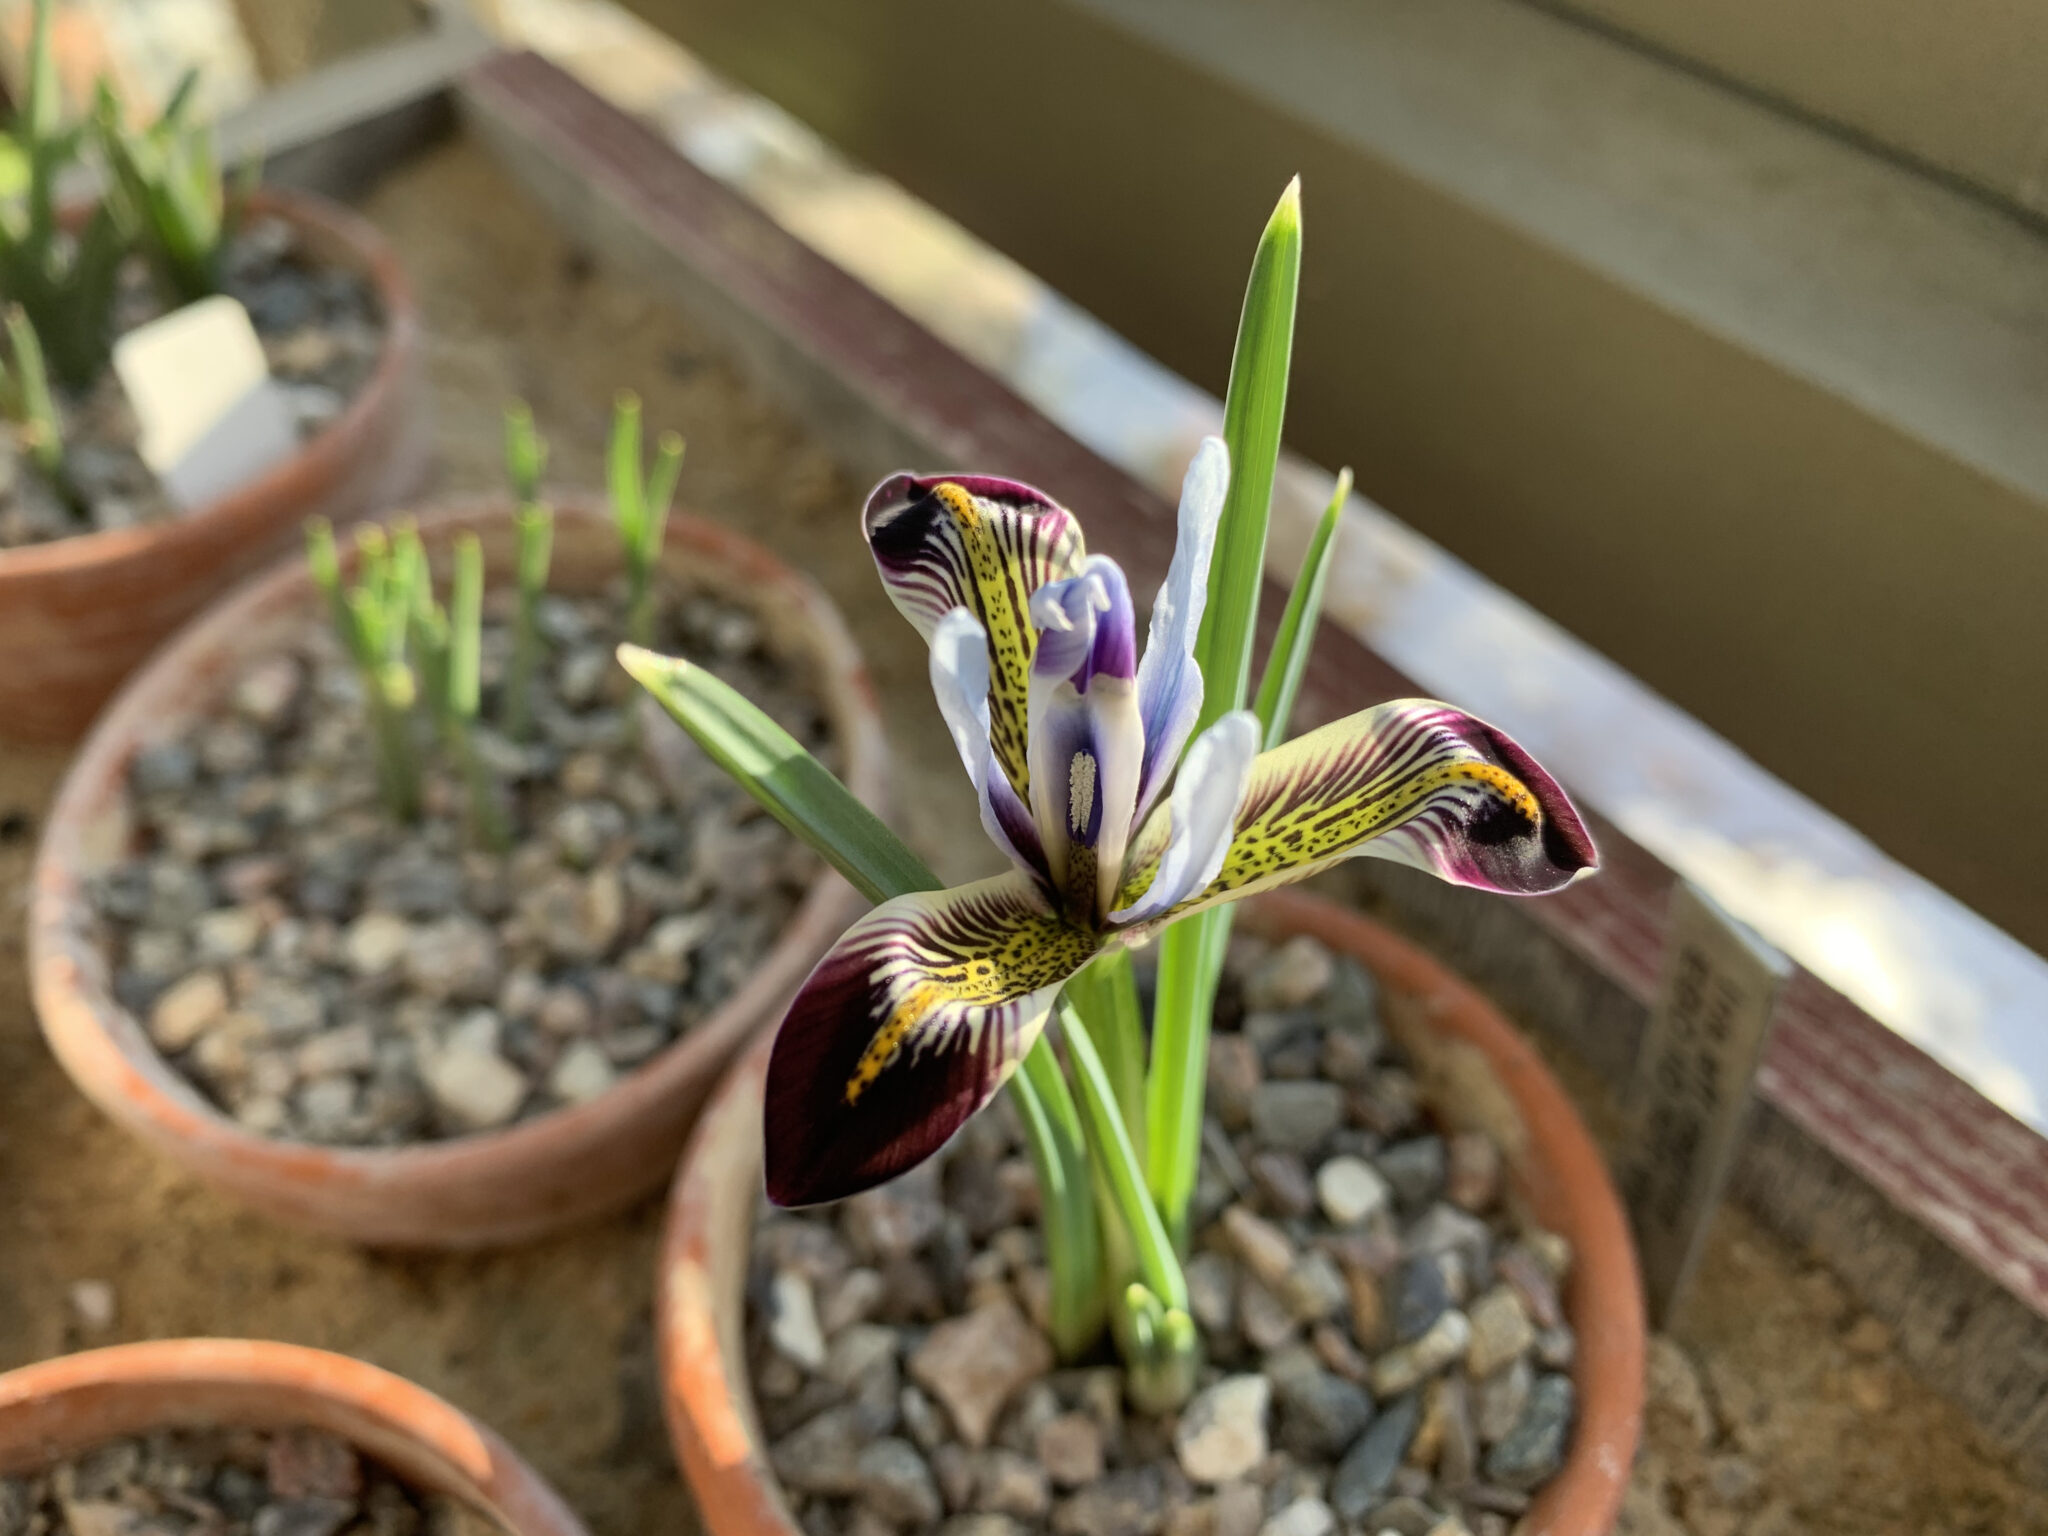 Iris zetterlundii